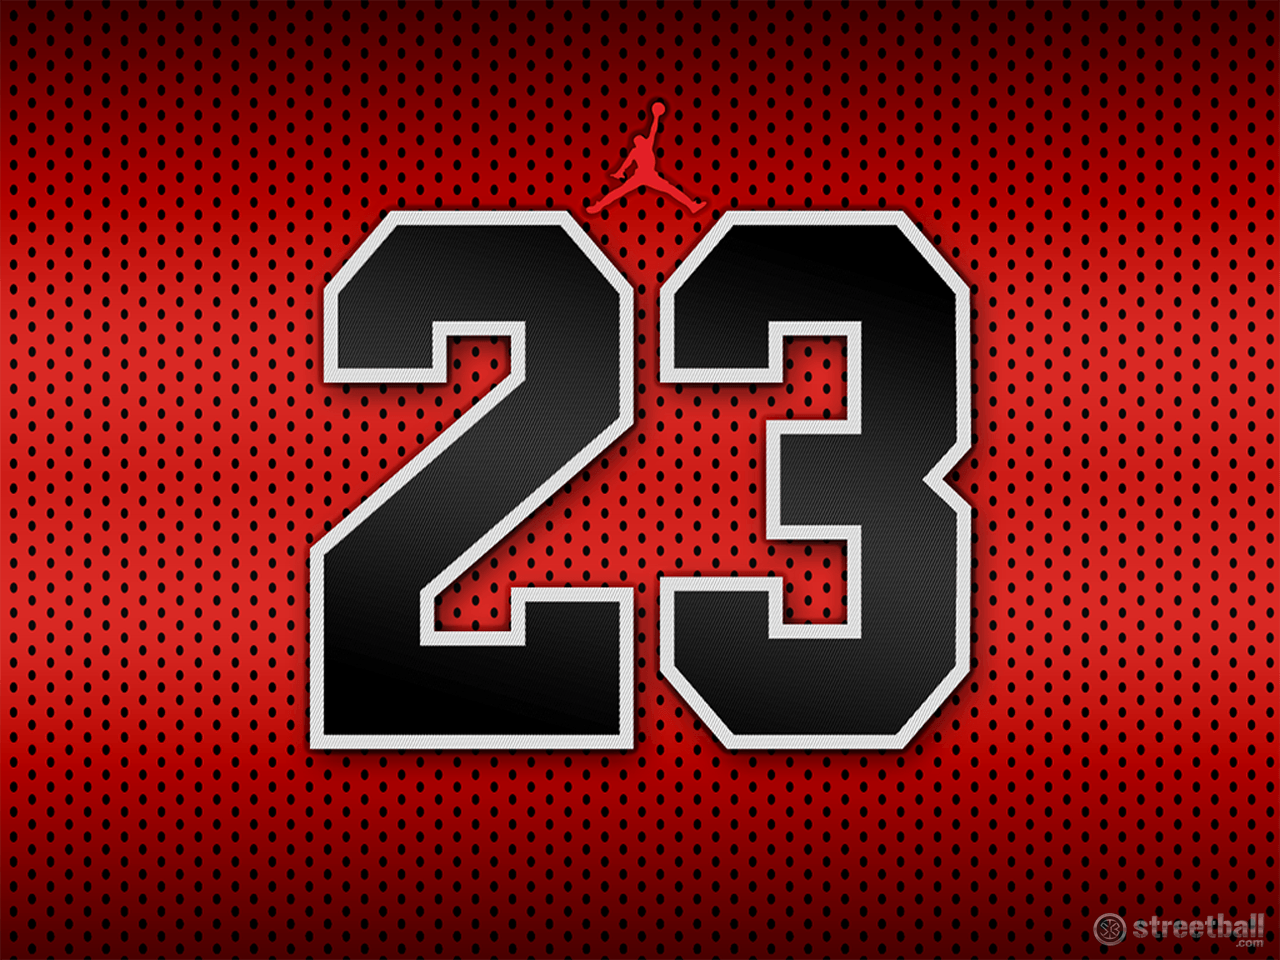 Bull Jordan 23 Logo - Michael Jordan Wallpapers HD Download Free | PixelsTalk.Net